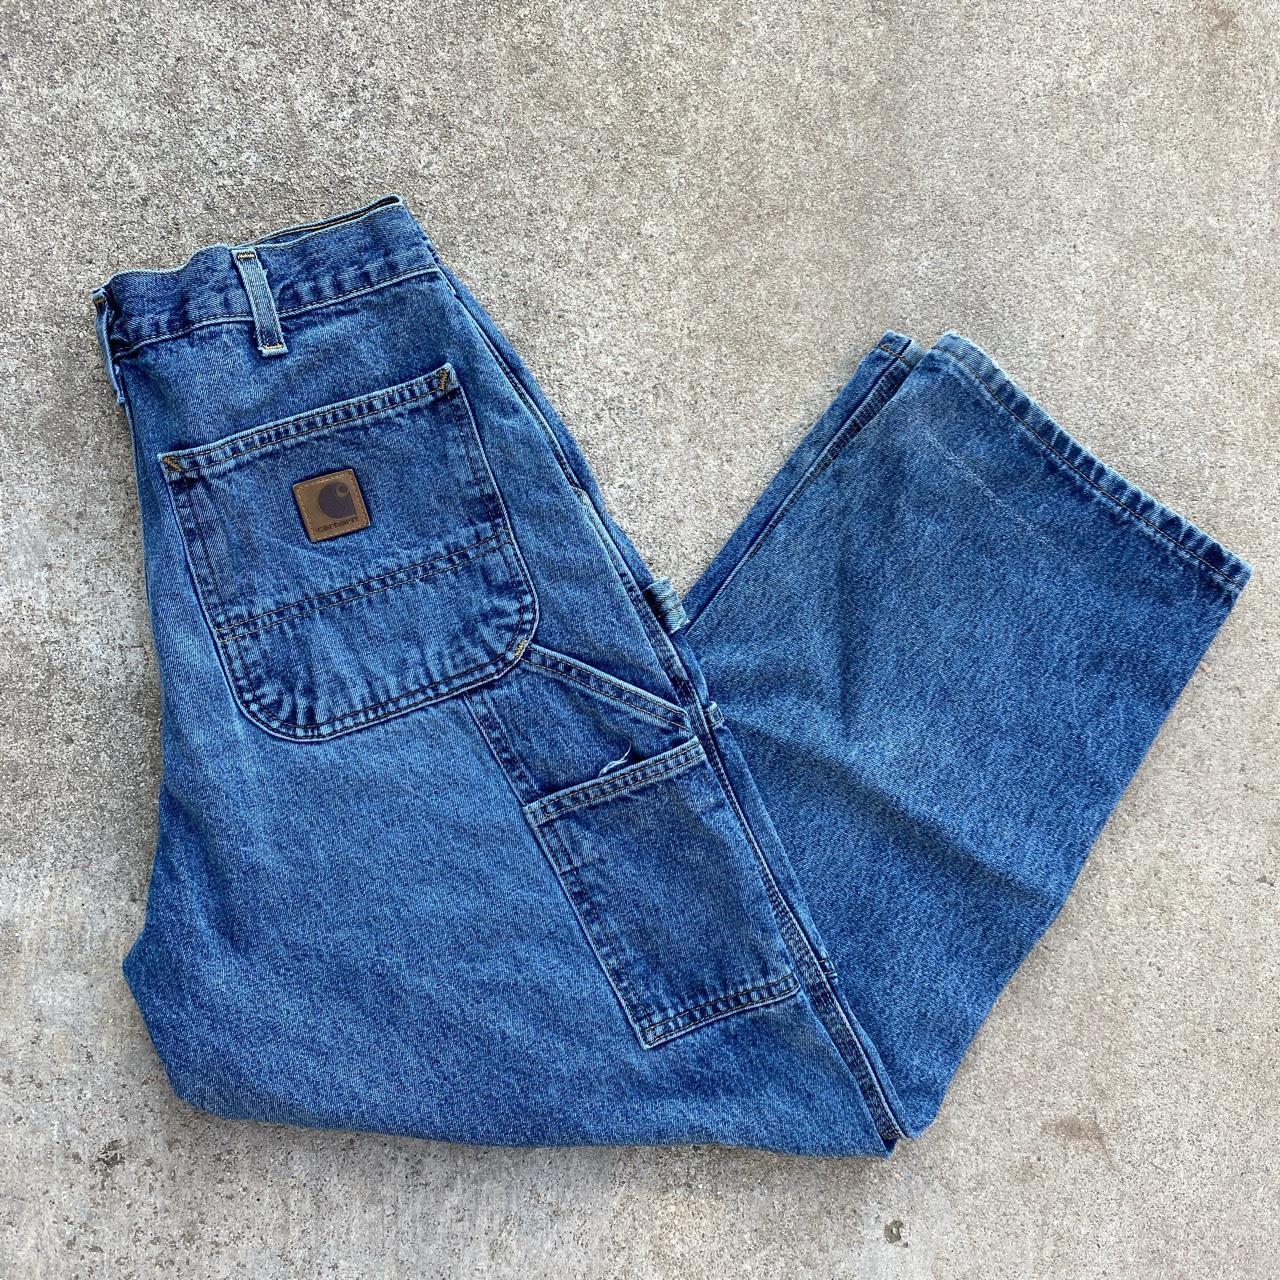 Vintage 90s Carhartt Dark Denim Cargo Jeans... - Depop